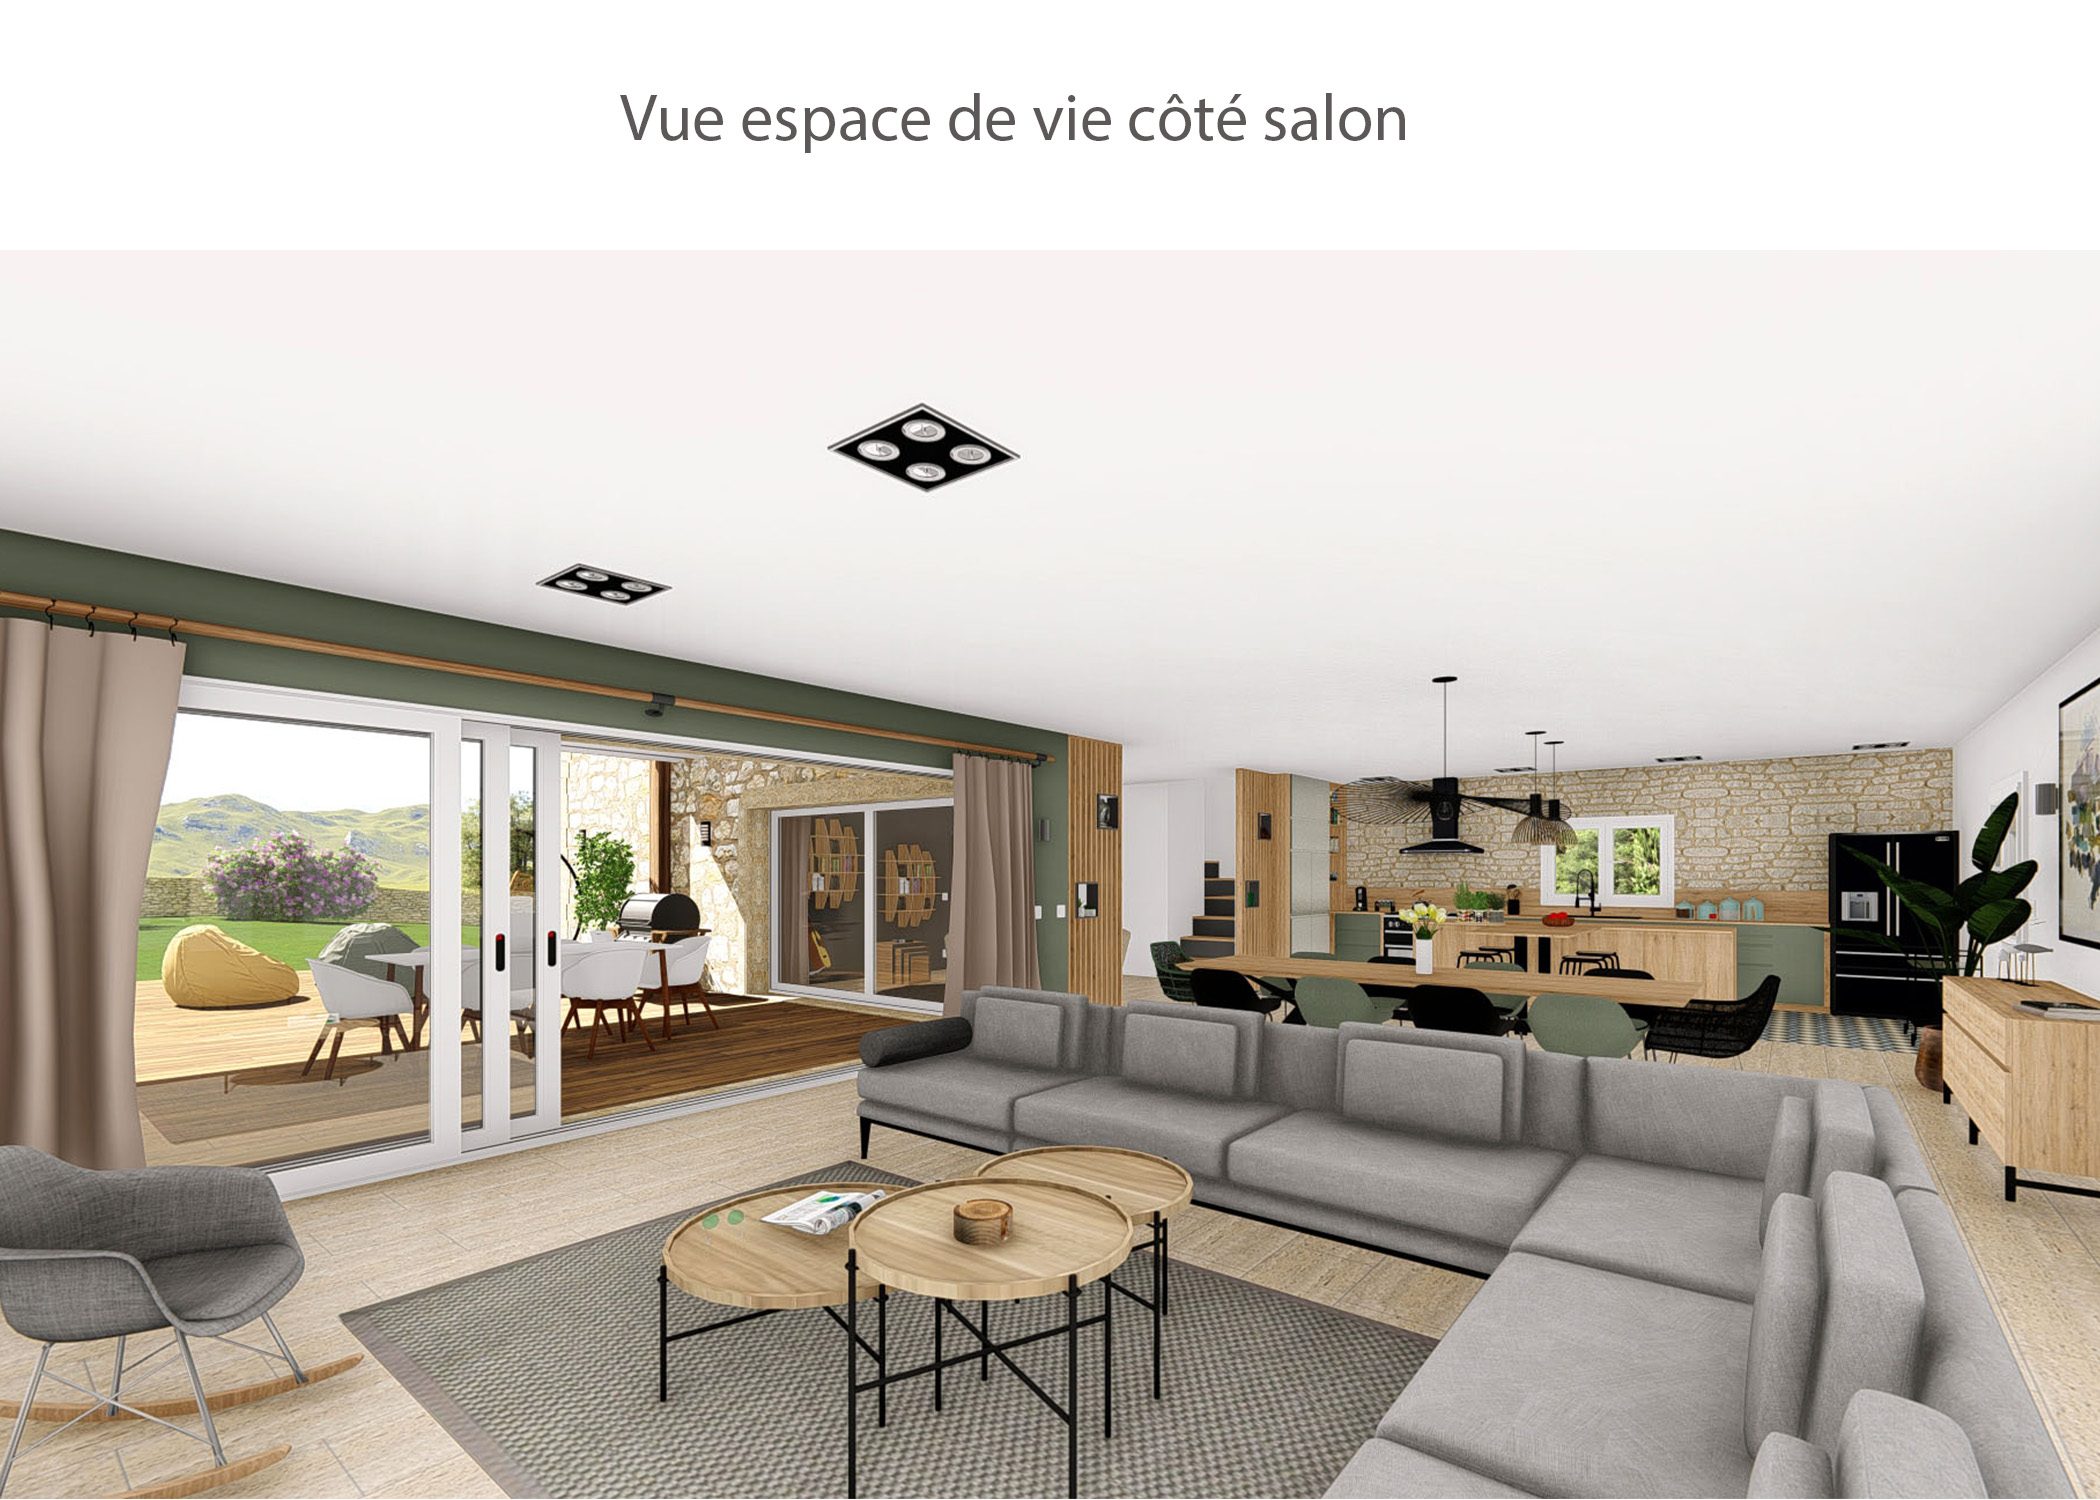 amenagement-decoration-maison de famille-campagne-provence-espace de vie cote salon-dekho design